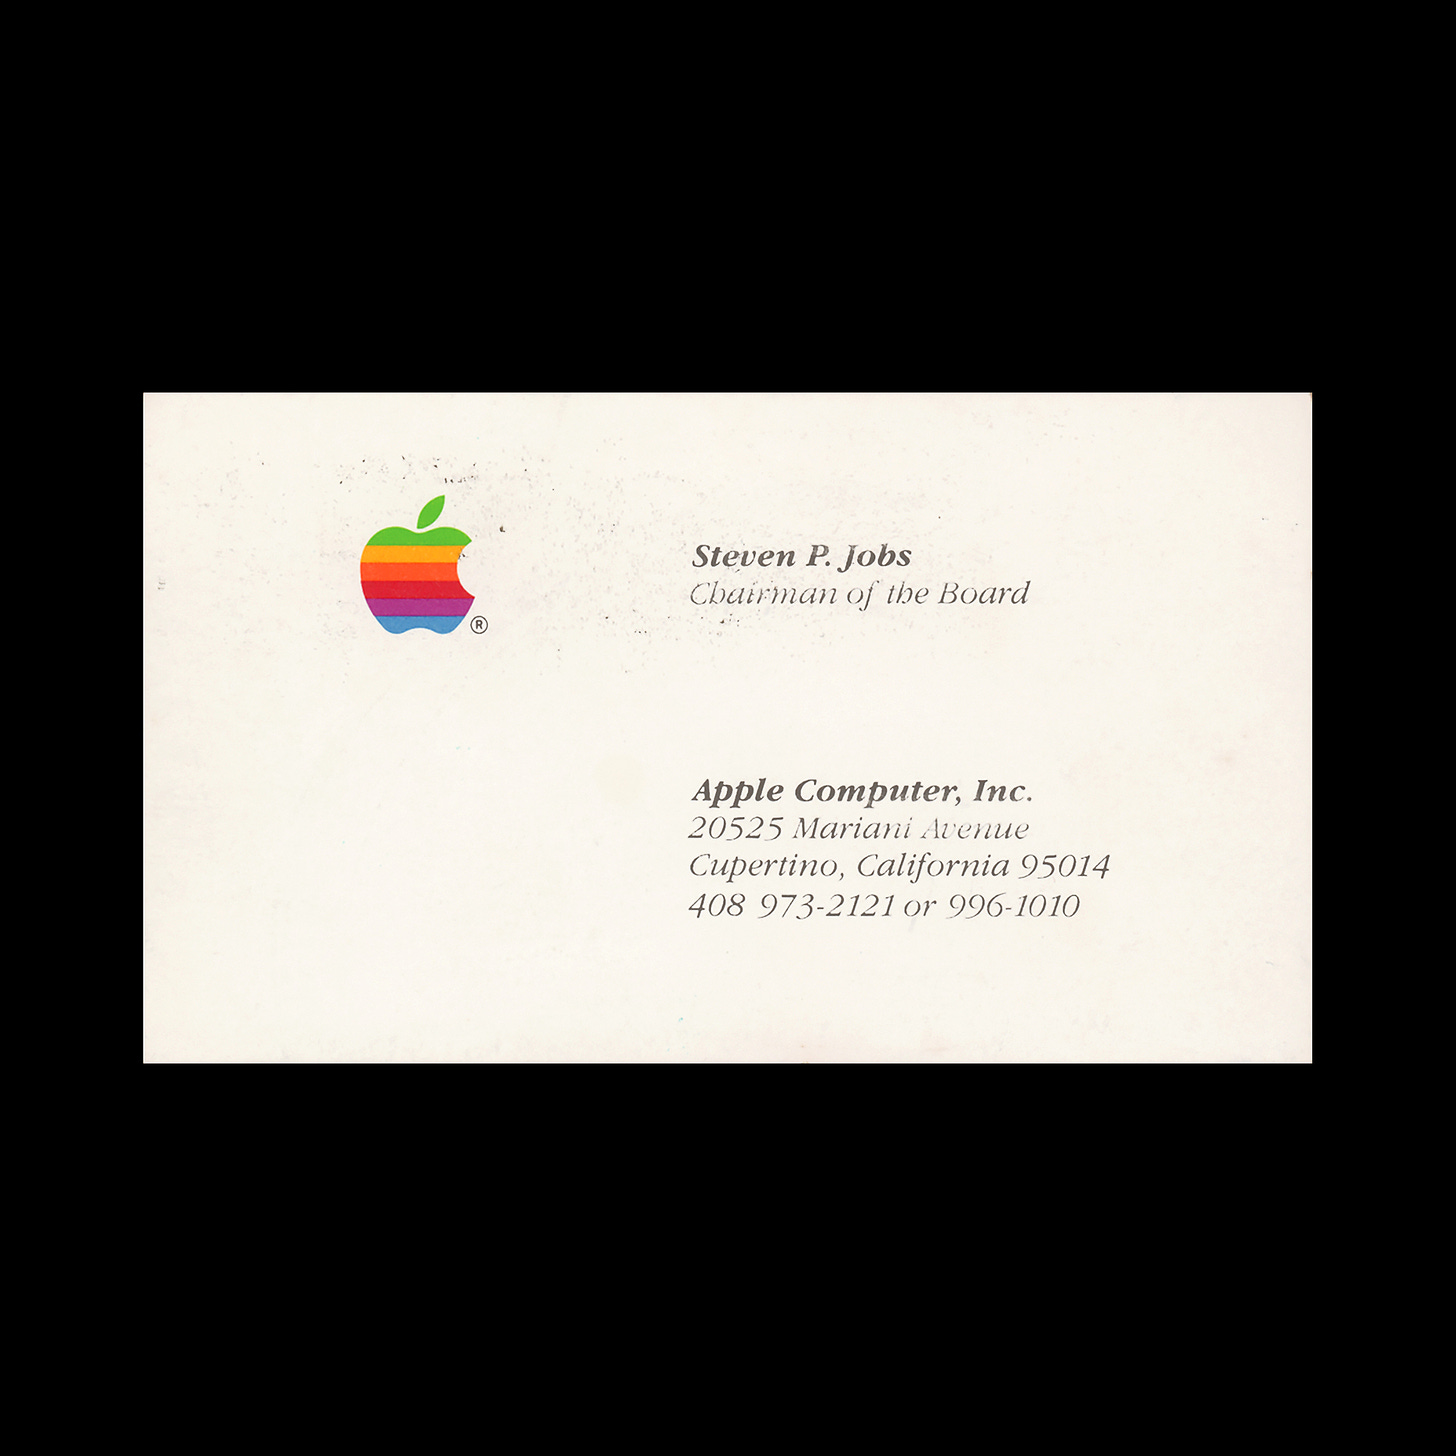 Steve Jobs Apple Computer business card design